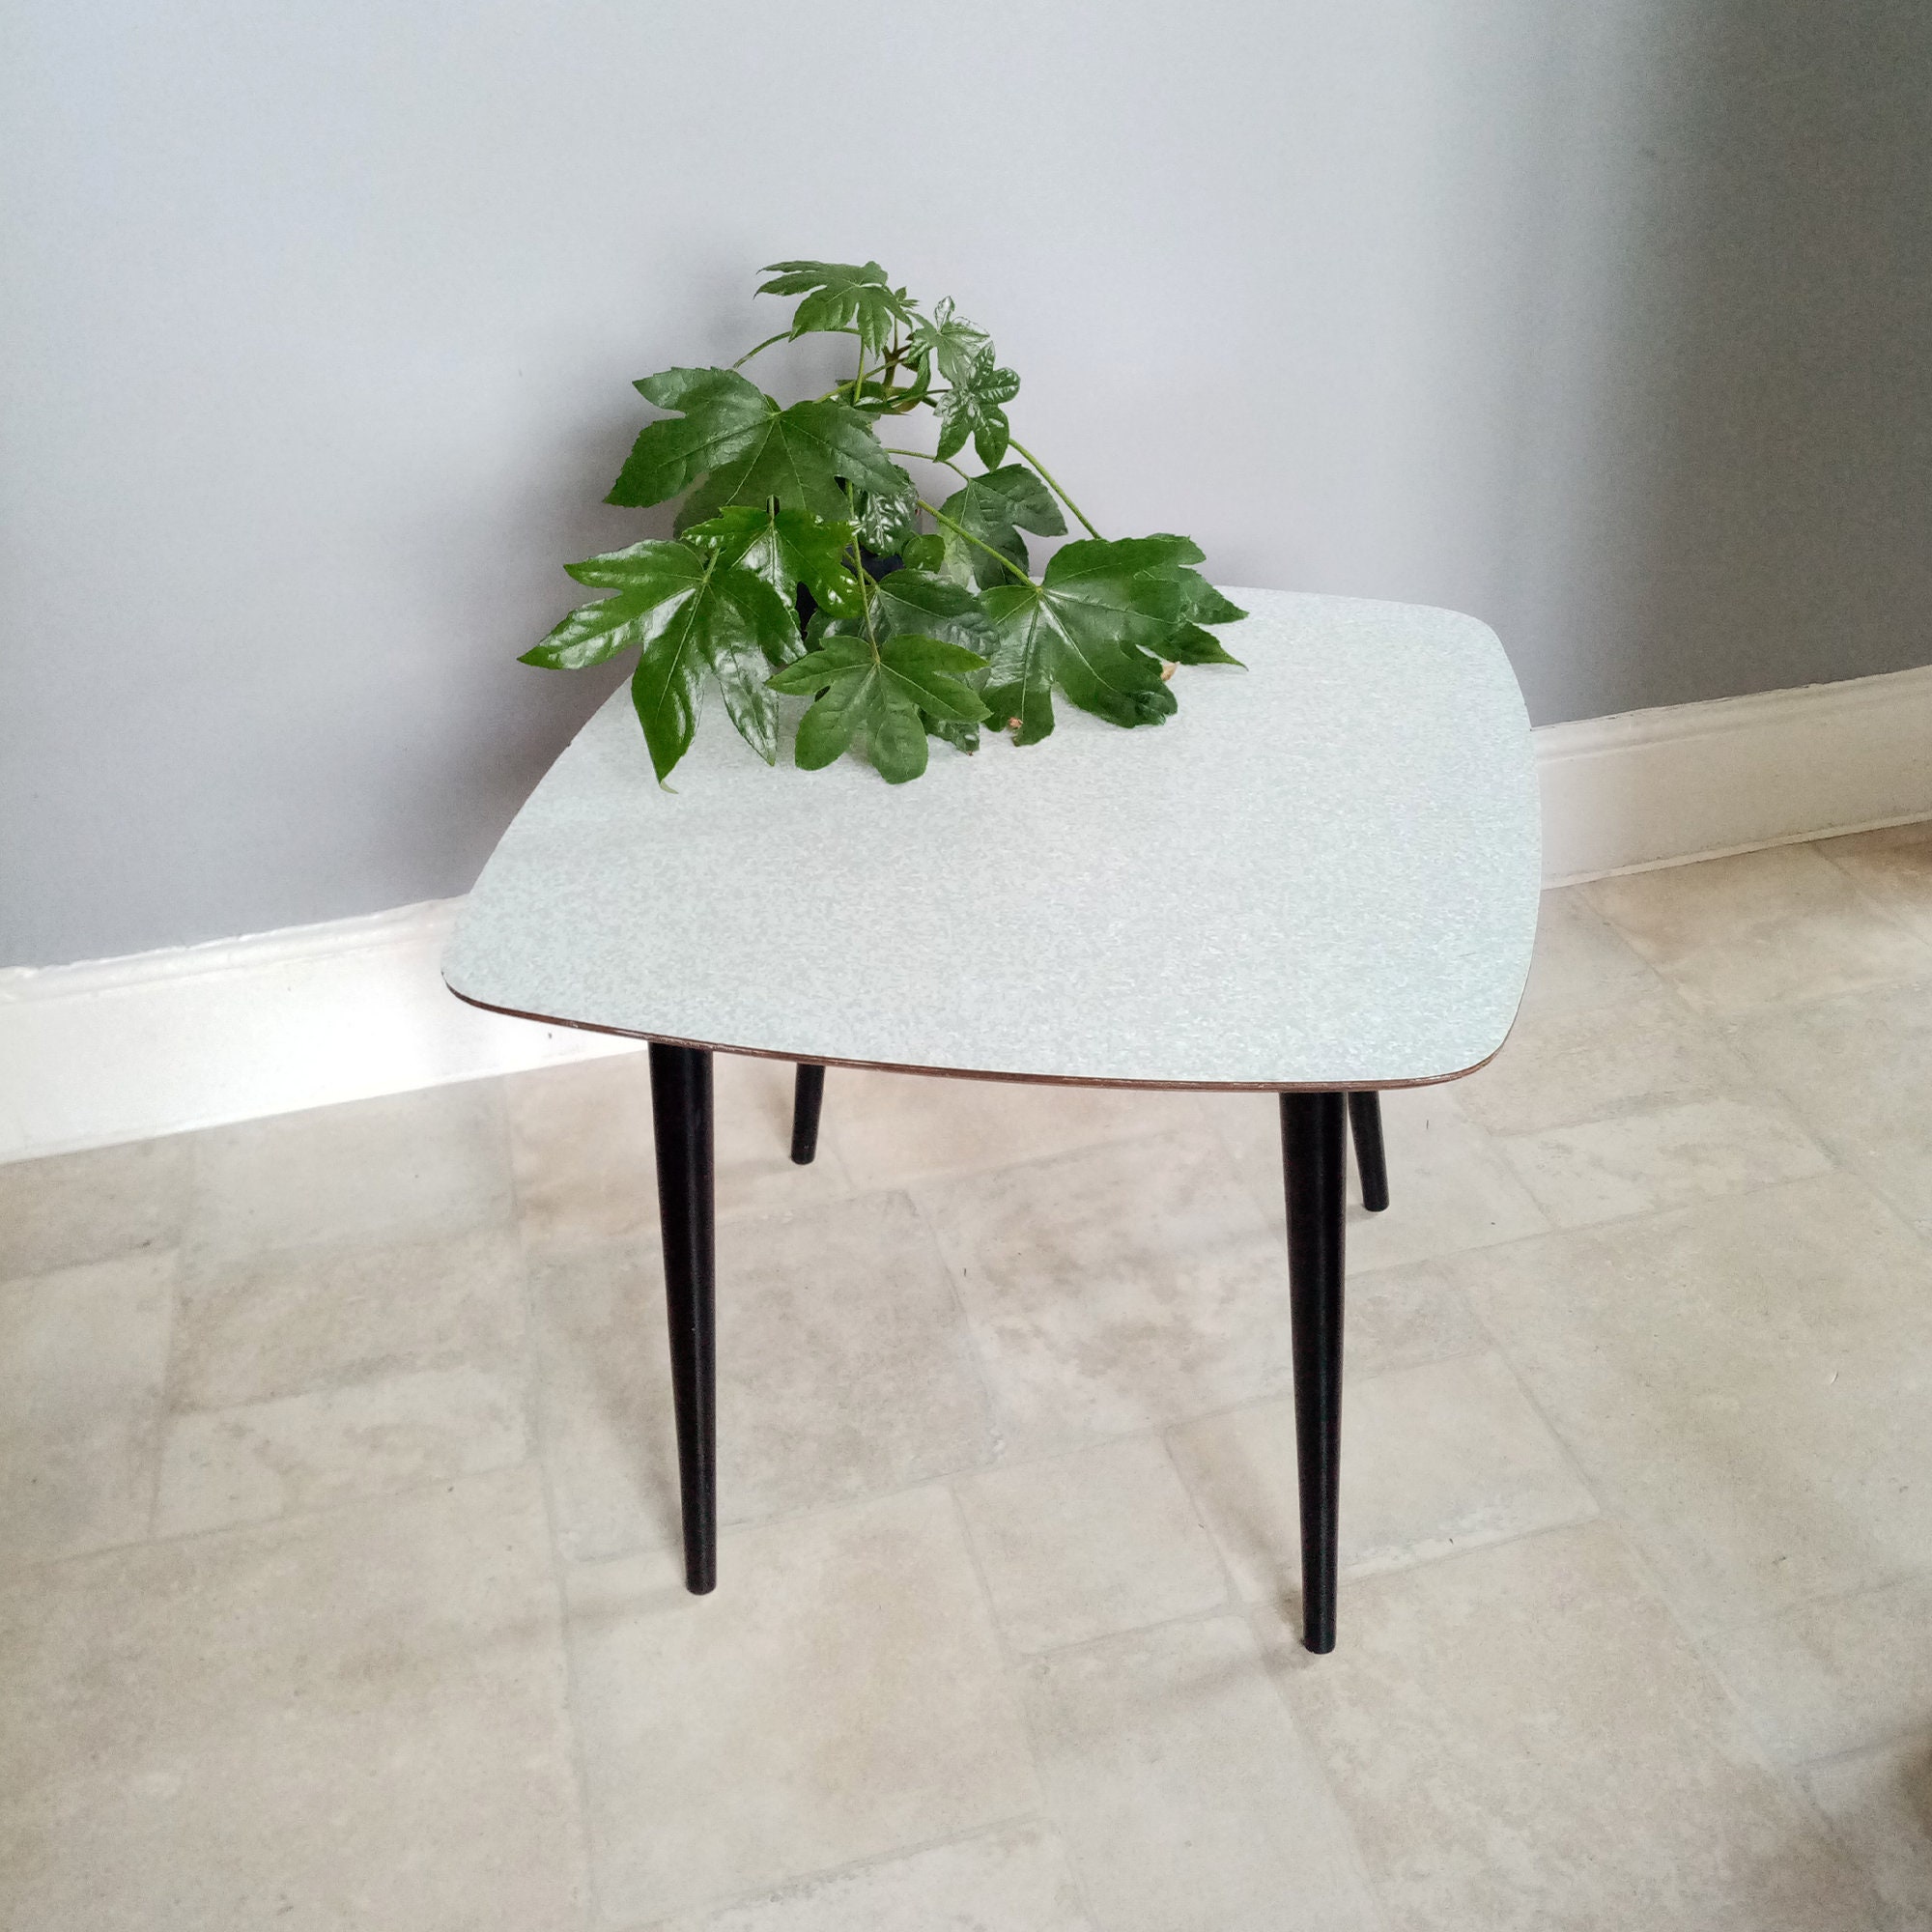 table d'appoint vintage mcm des années 60 - formica effet marbre bleu rétro table basse occasionnelle mid-century support pour plante pieds de